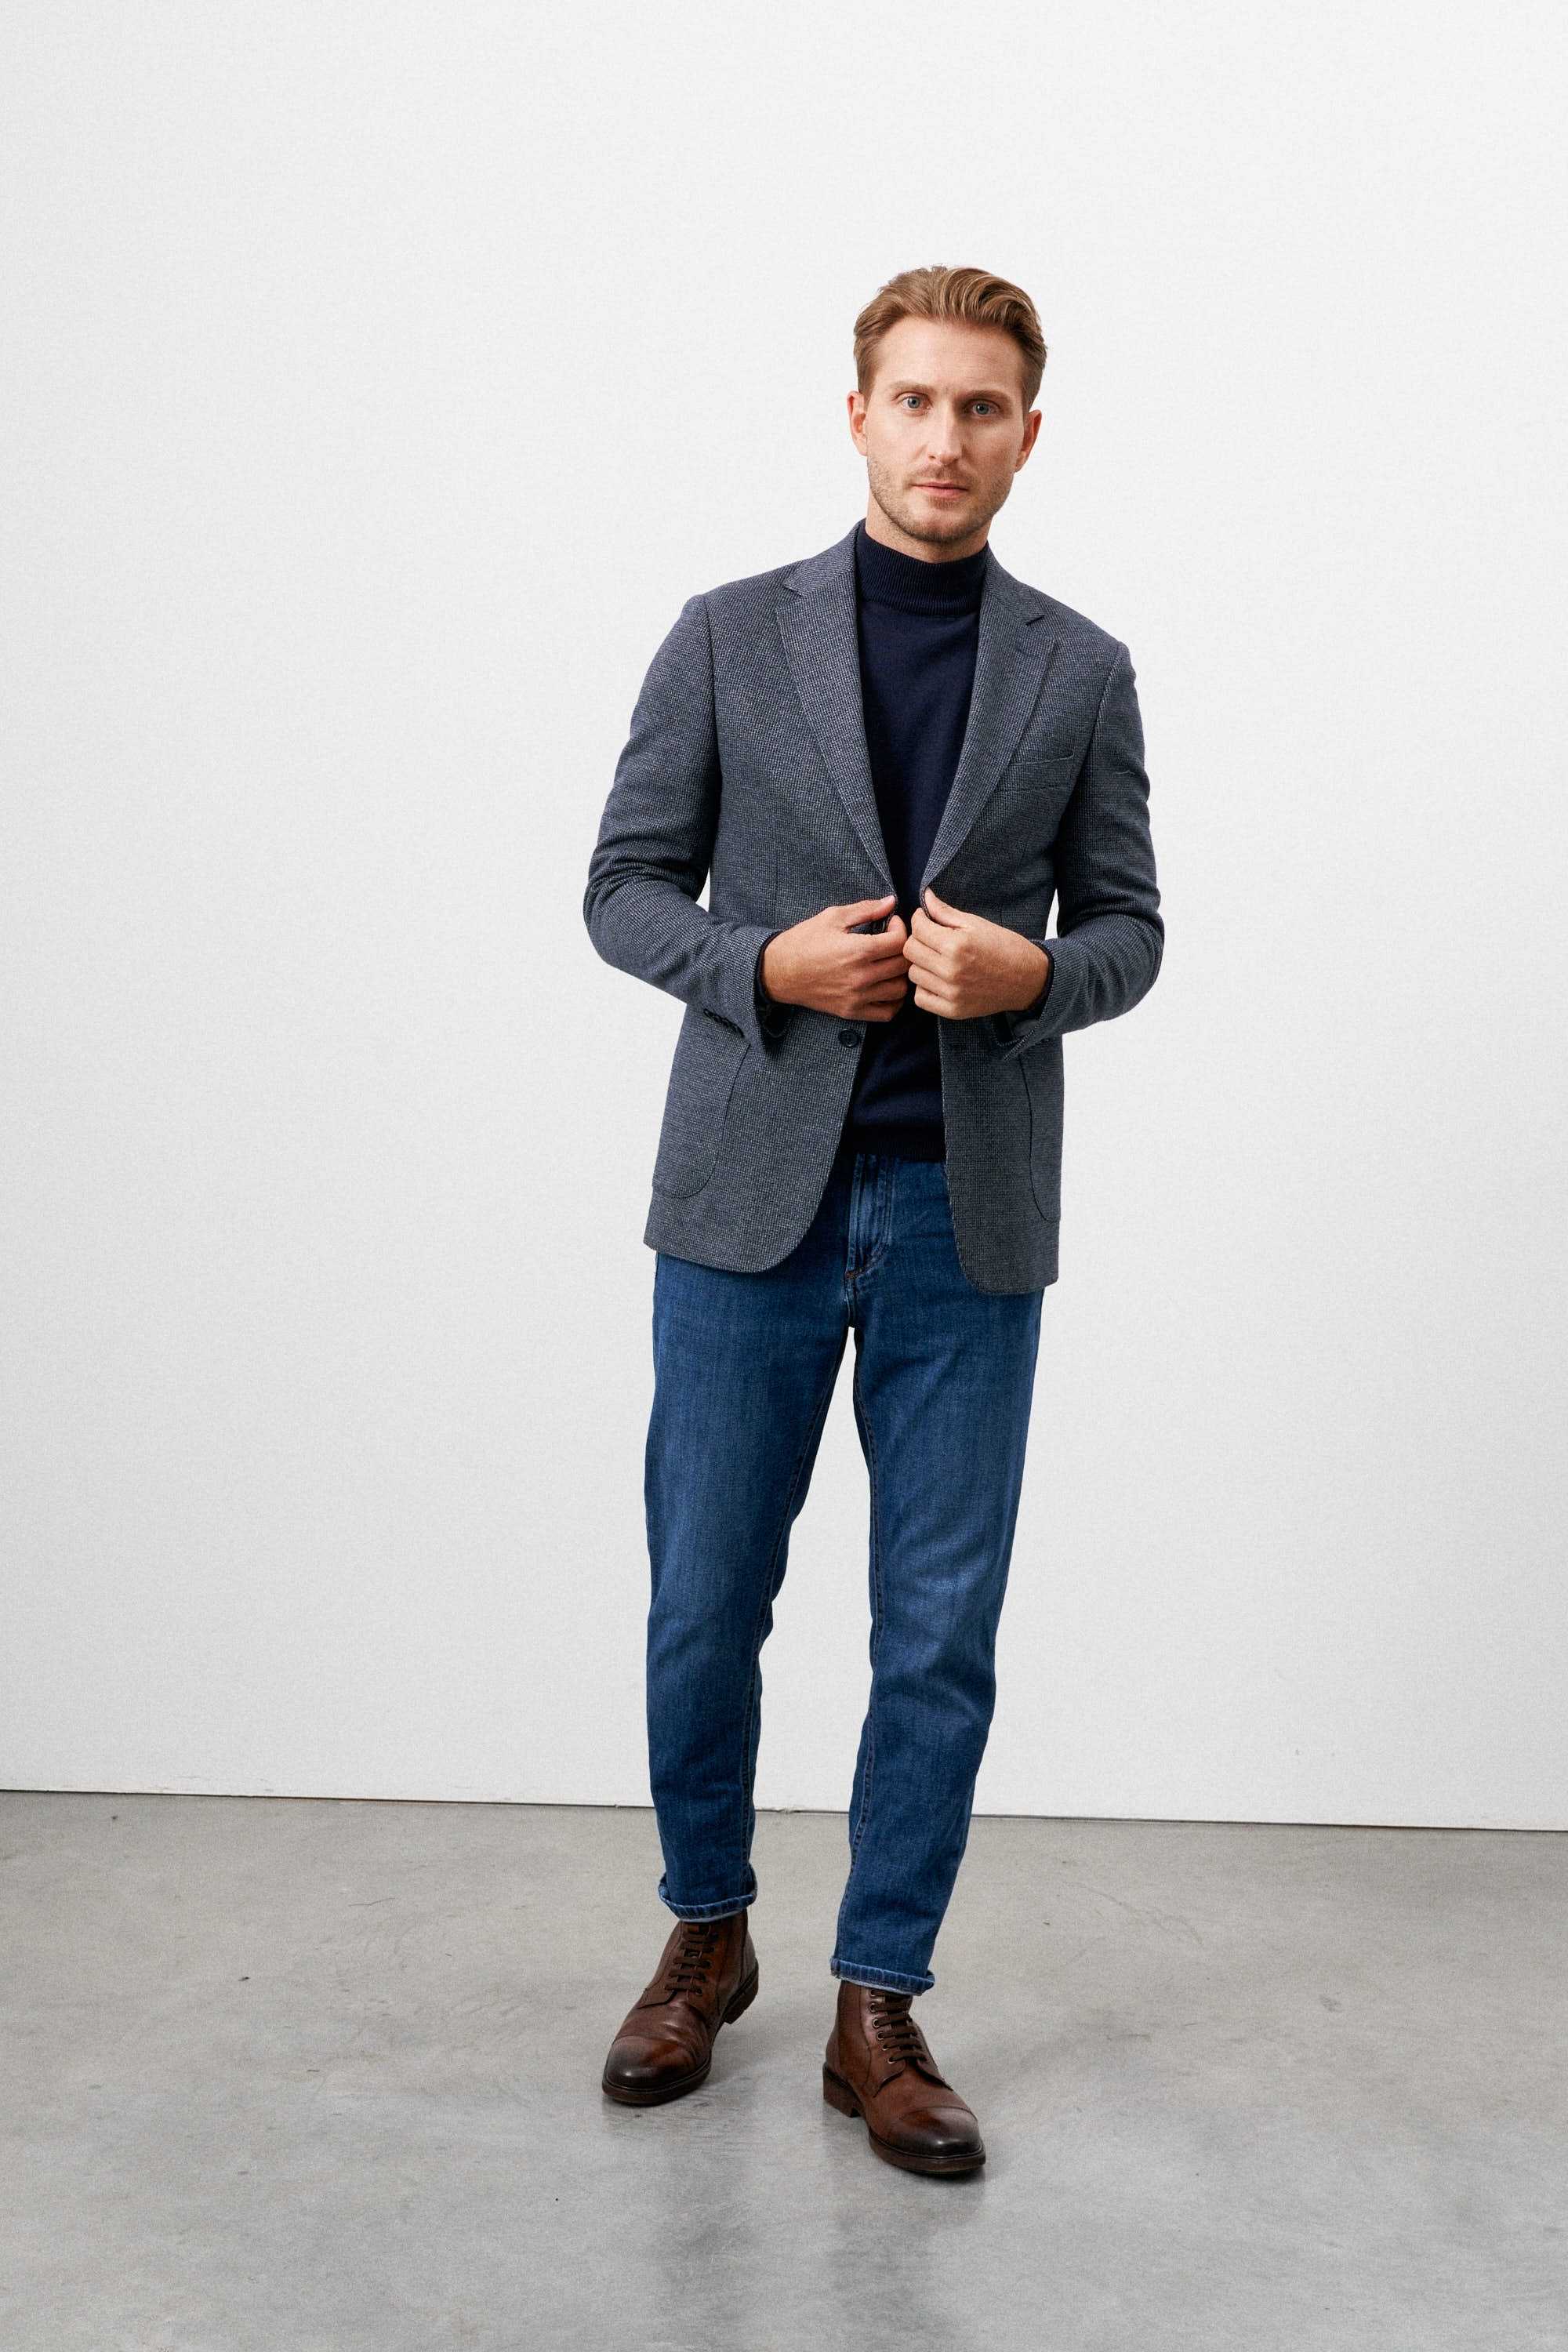 Пиджак мужской синий трикотажный в мелкий серый узор, с накладными  карманами - купить по выгодной цене в магазине Keyman